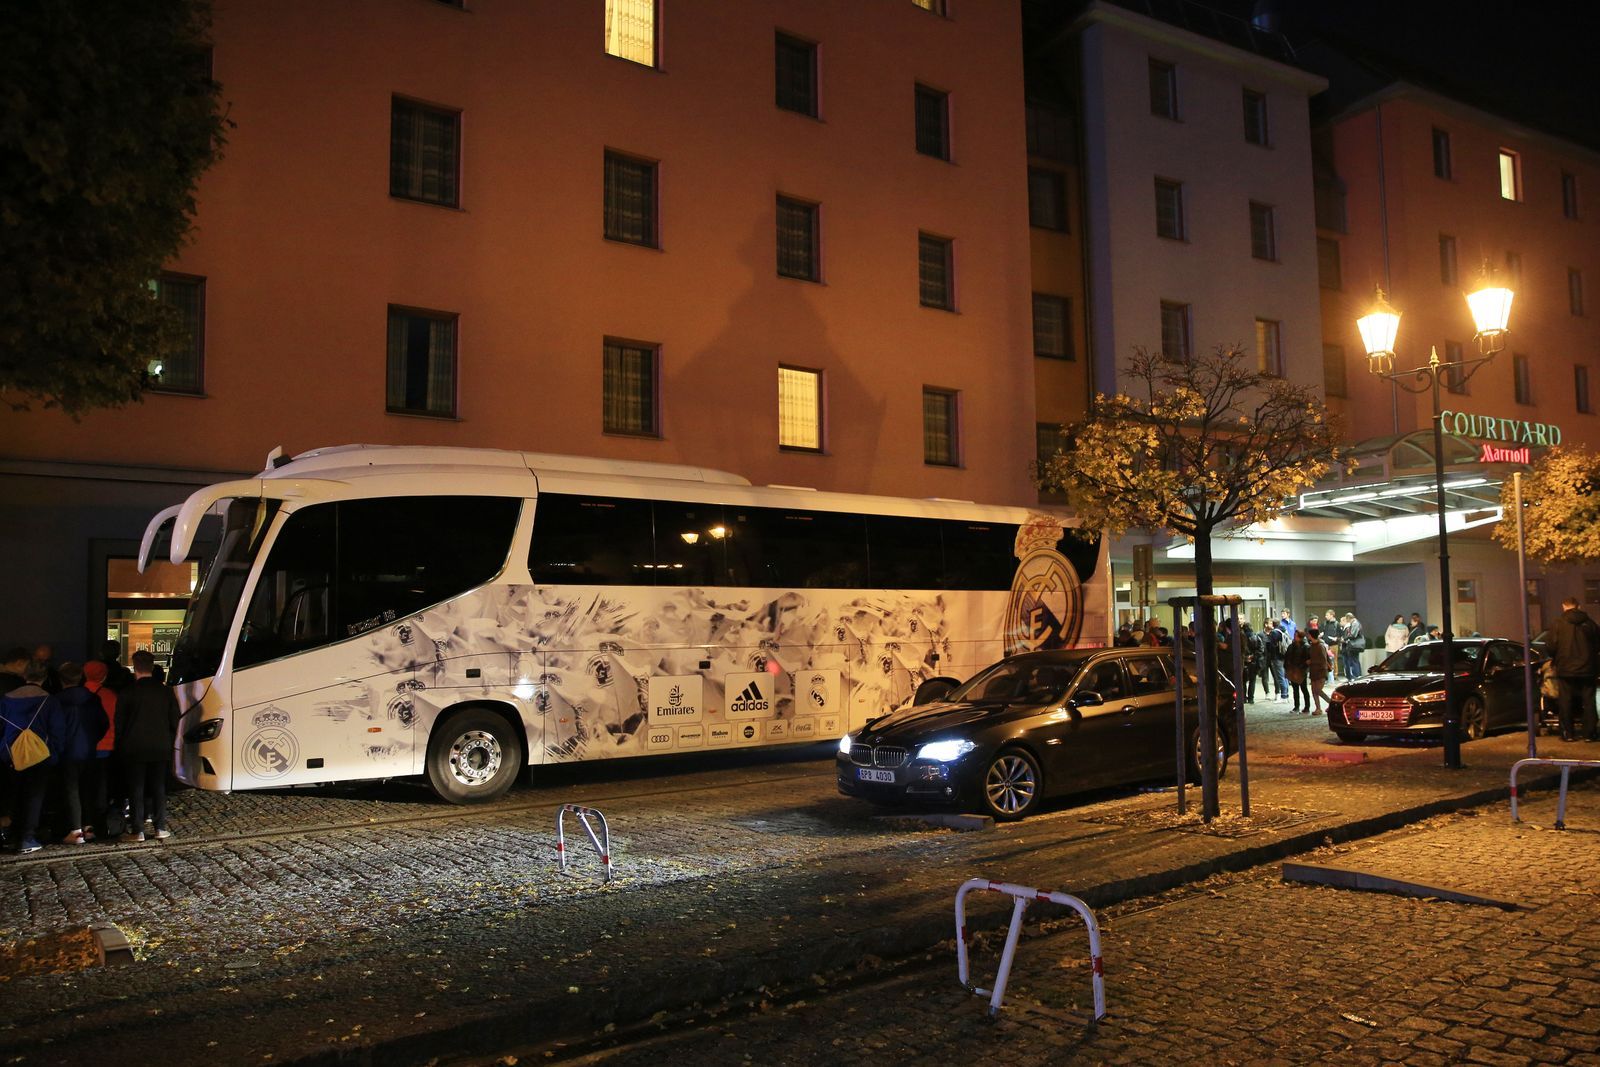 Real Madrid v Plzni před utkáním Ligy mistrů, klubový autobus